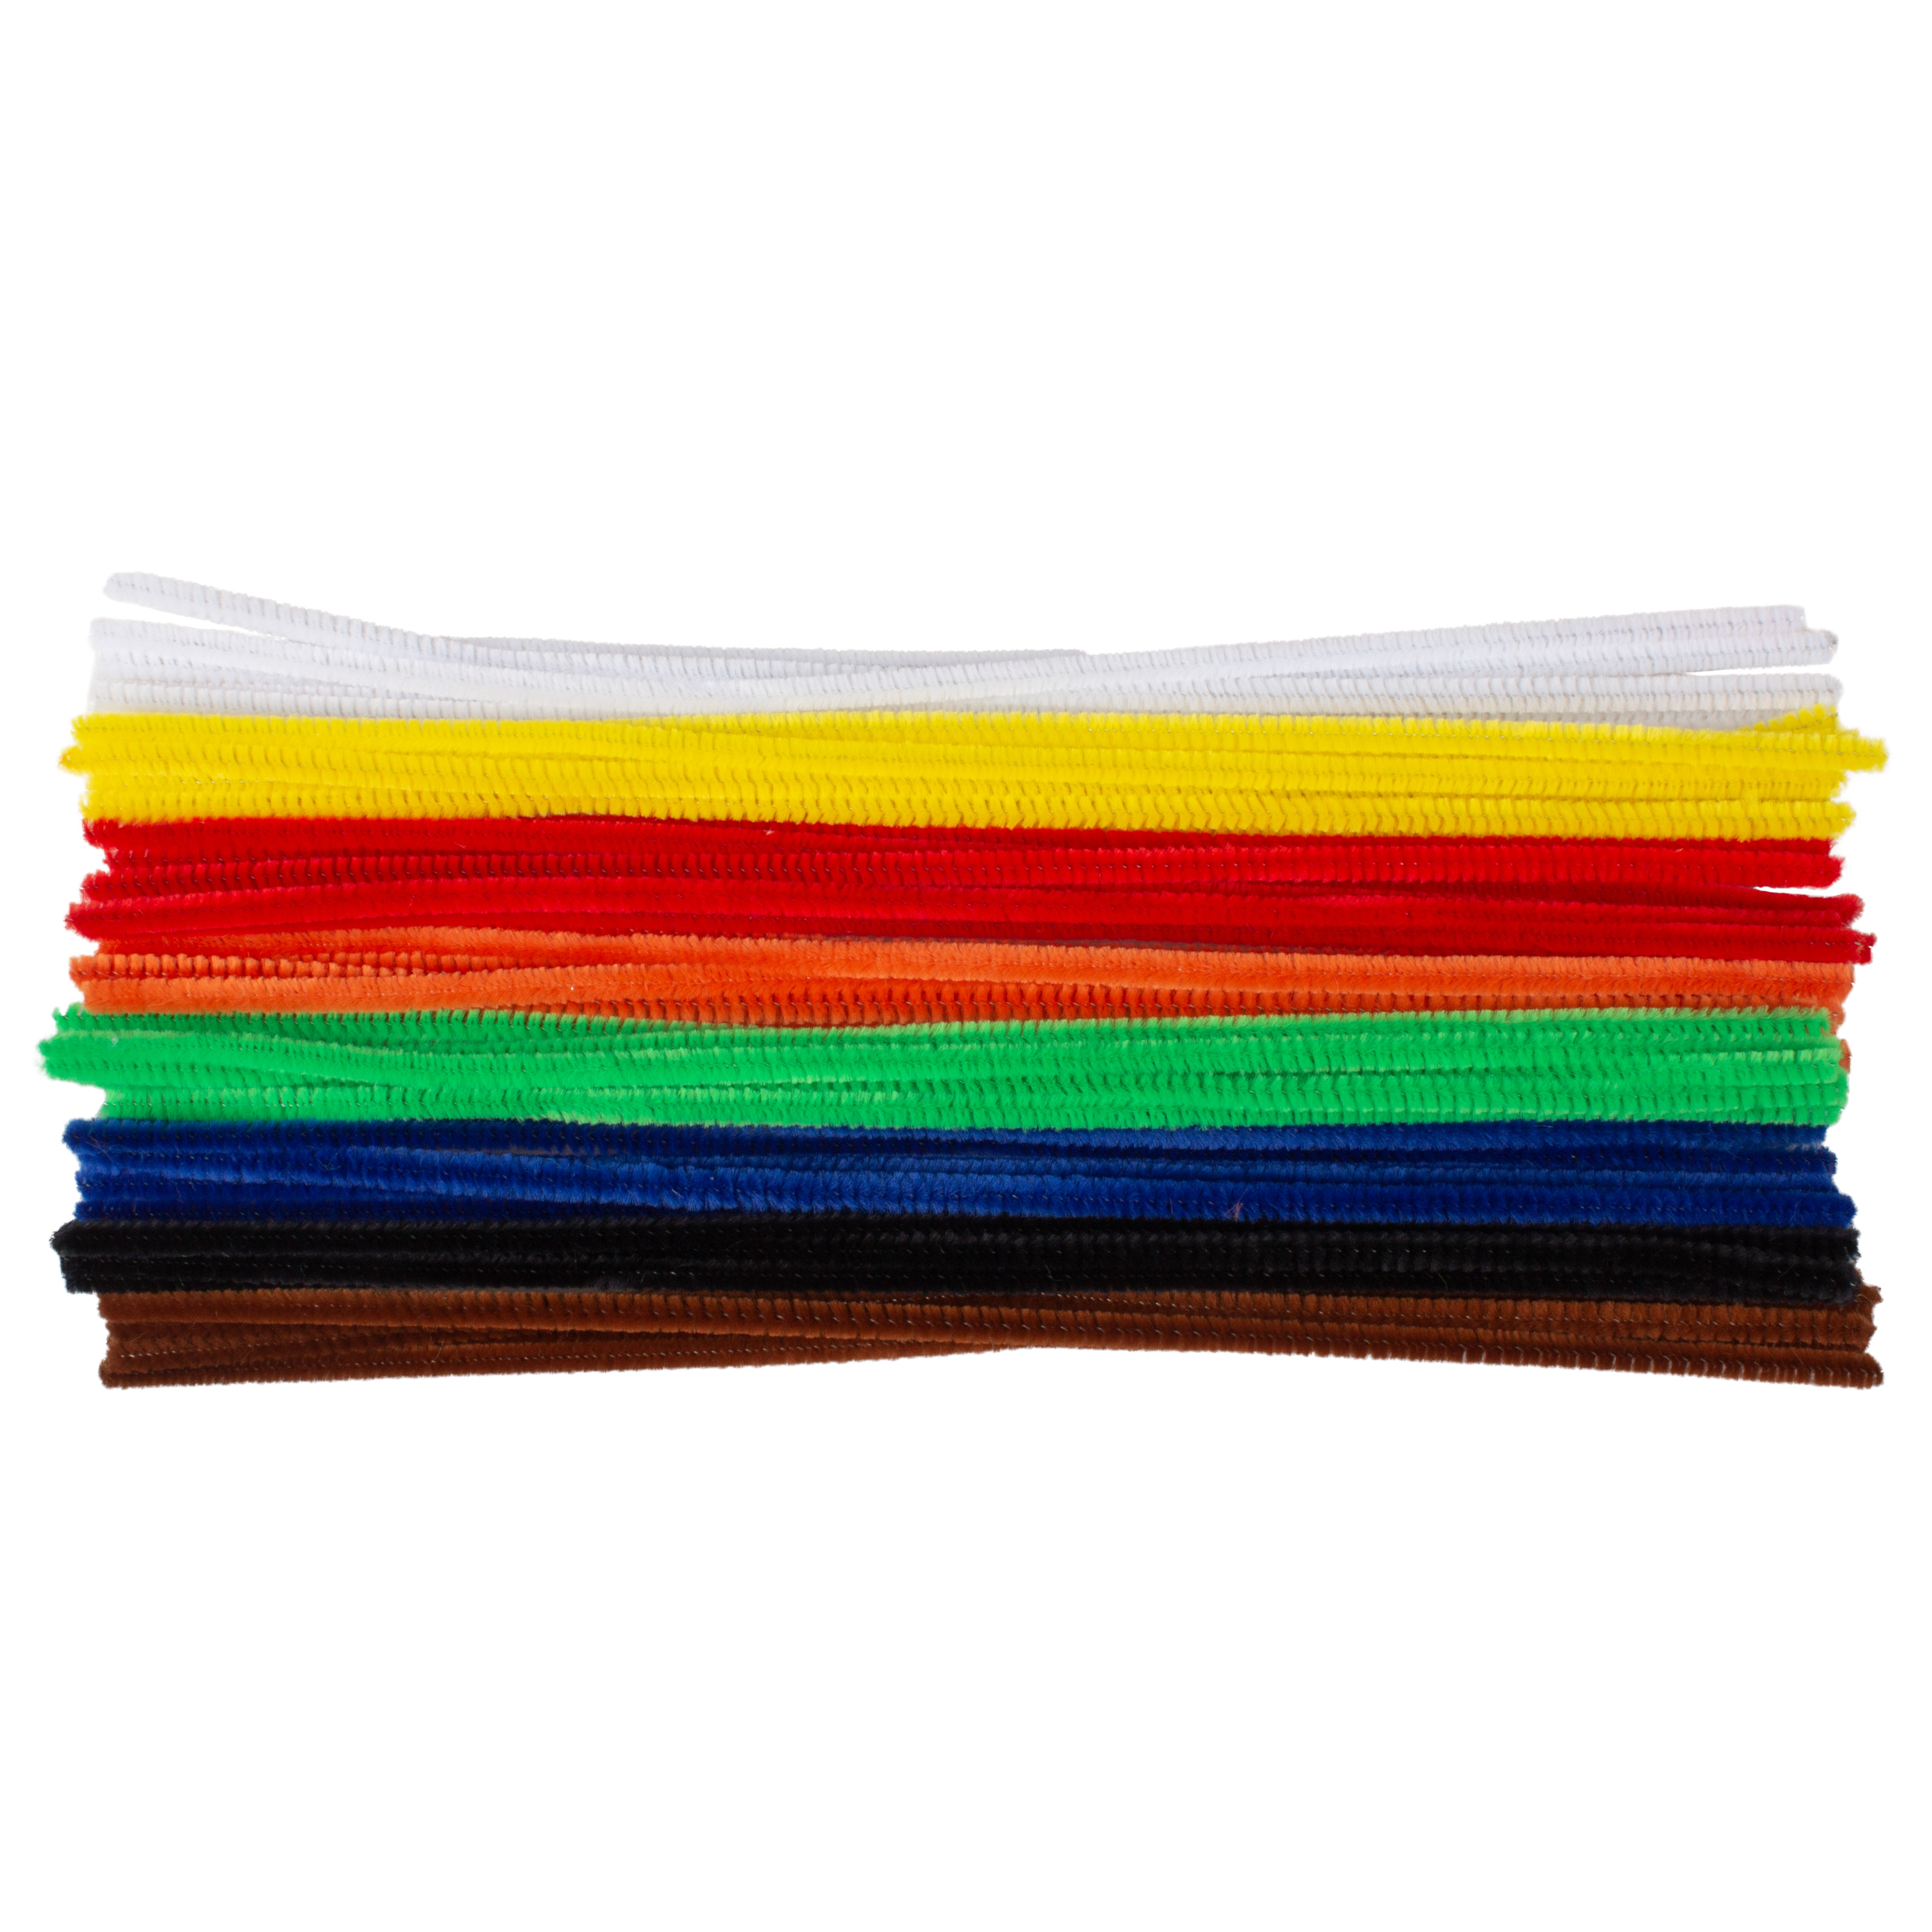 Pfeifenputzer Basisfarben, 50 Stück, L: 30 cm, Ø 7 mm